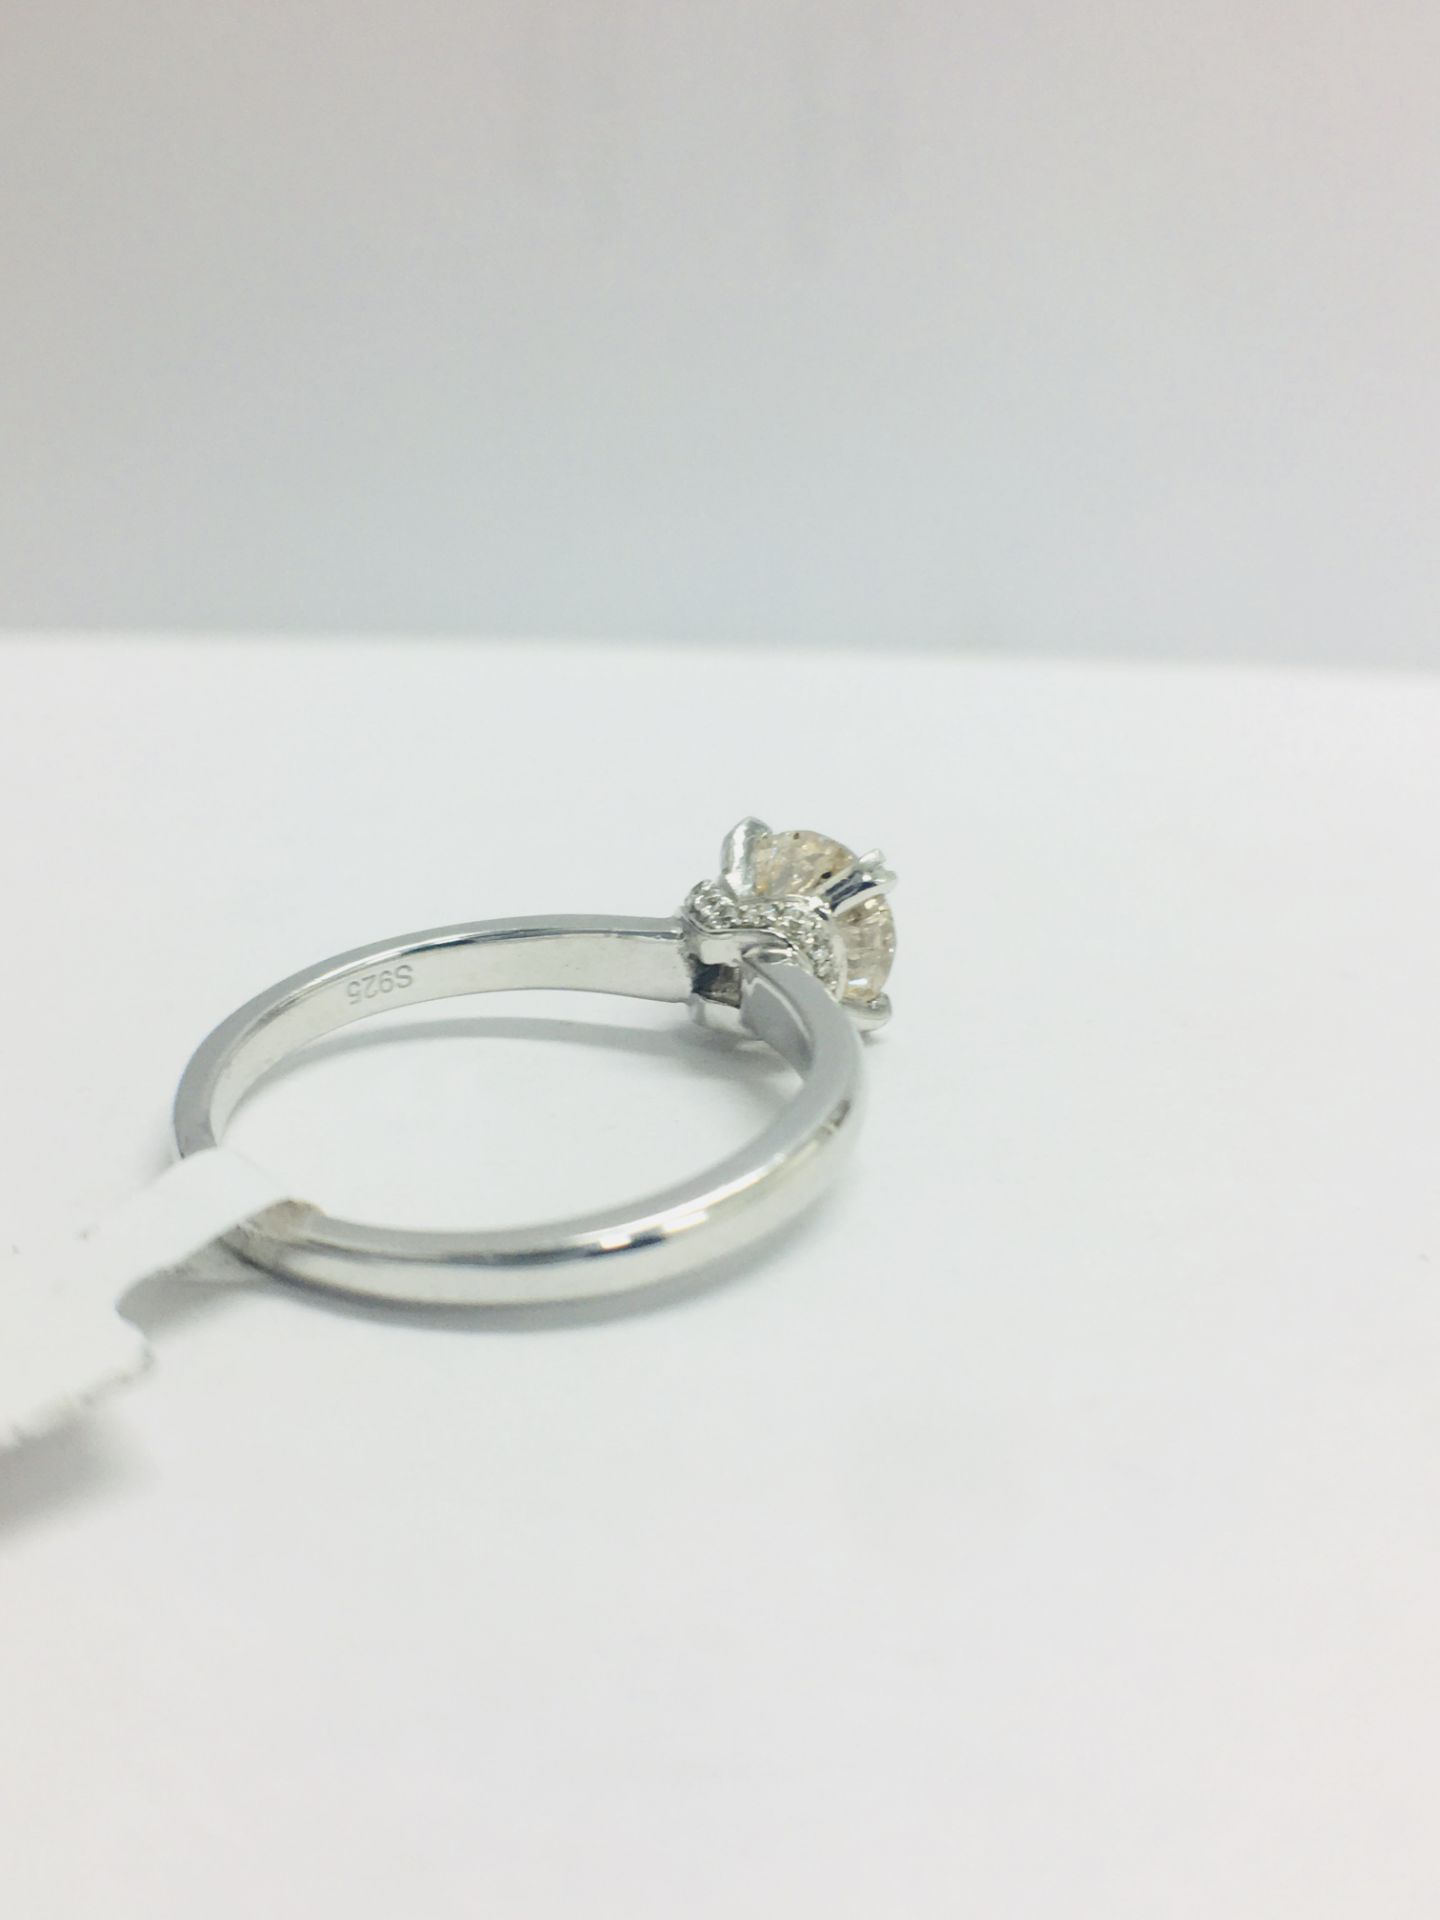 1ct Diamond Solitaire ring set in Platinum diamnd setting - Image 8 of 13